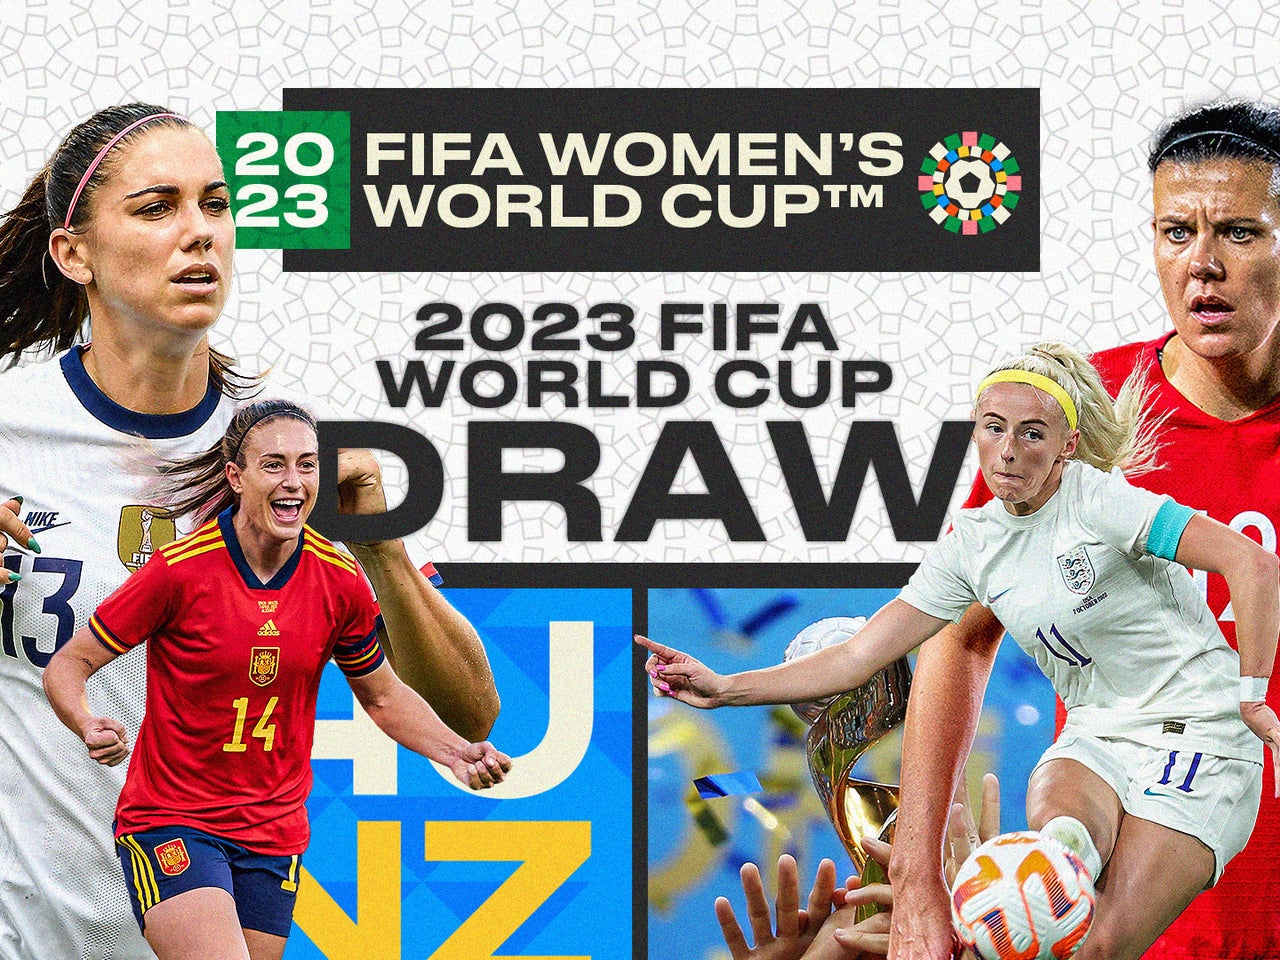 https://a57.foxsports.com/statics.foxsports.com/www.foxsports.com/content/uploads/2022/10/1280/960/10.21.22_Womens-World-Cup-Draw-is-Set_16x9.jpg?ve=1&tl=1